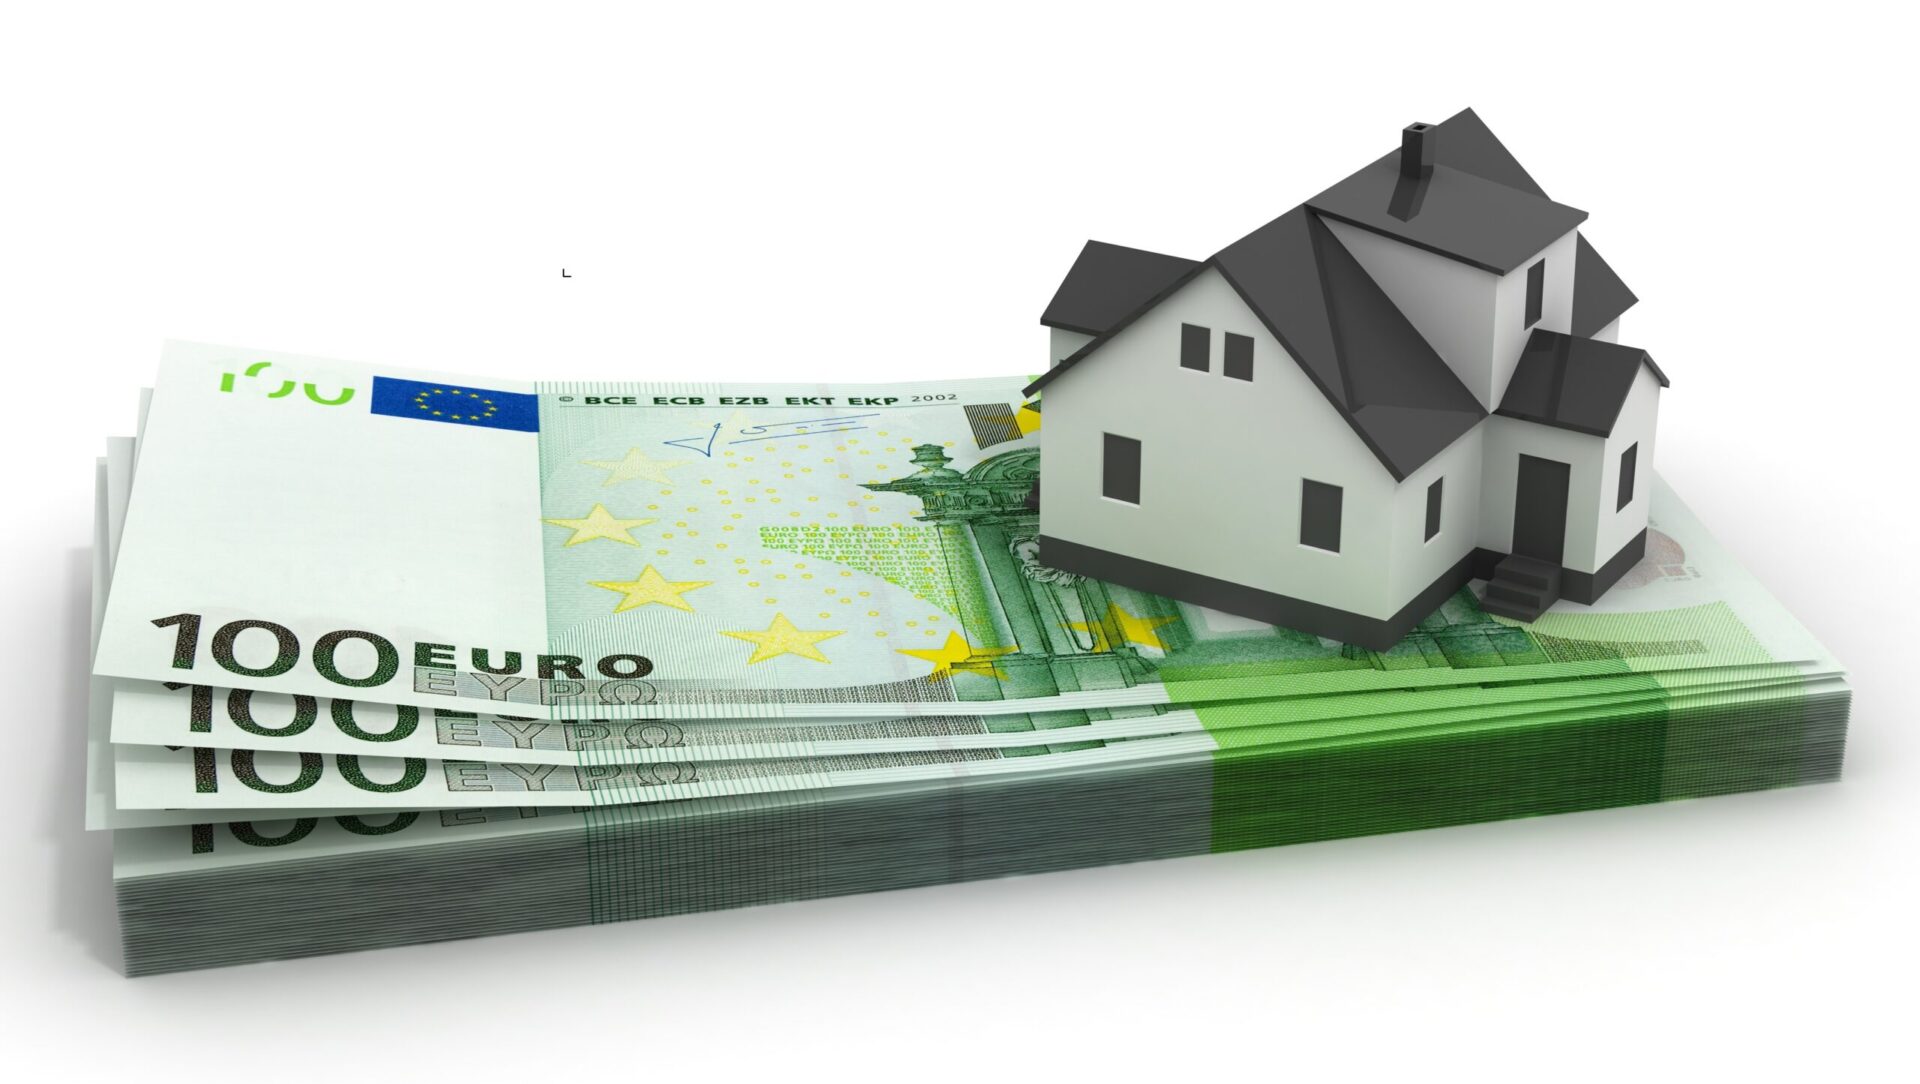 Immagine puramente decorativa dell'articolo "Leasing immobiliare abitativo" In questa immagine è mostrata una casa su un mazzetto di banconote da 100 euro. Ma la domanda sorge spontanea: "Il leasing abitativo conviene davvero?"